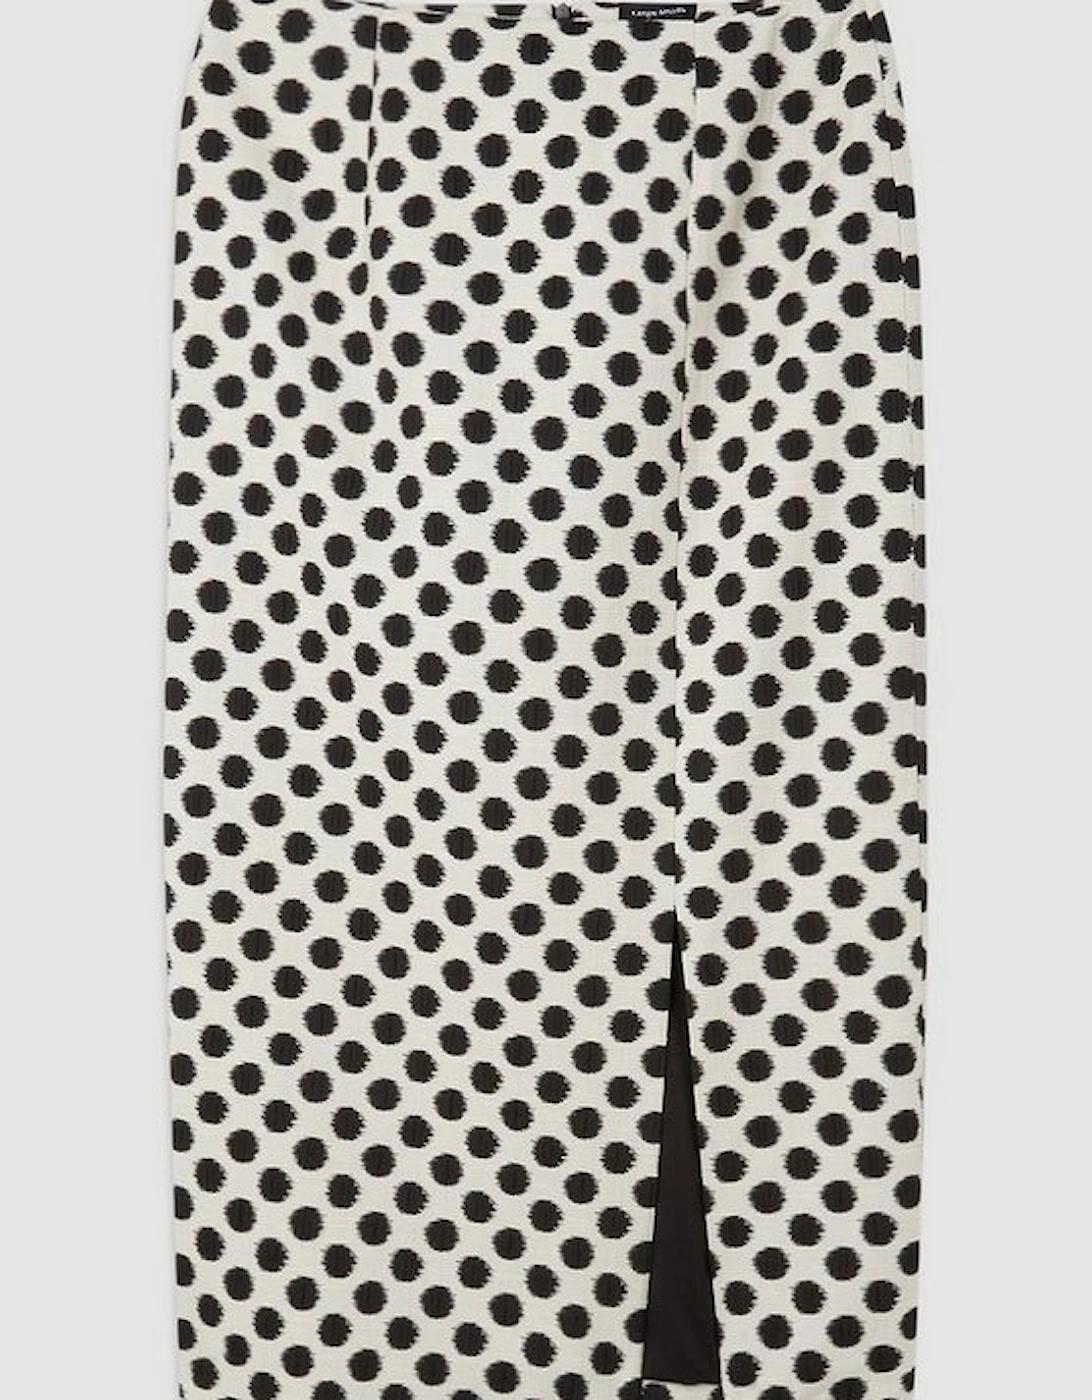 Tailored Jacquard Spot Pencil Midi Skirt